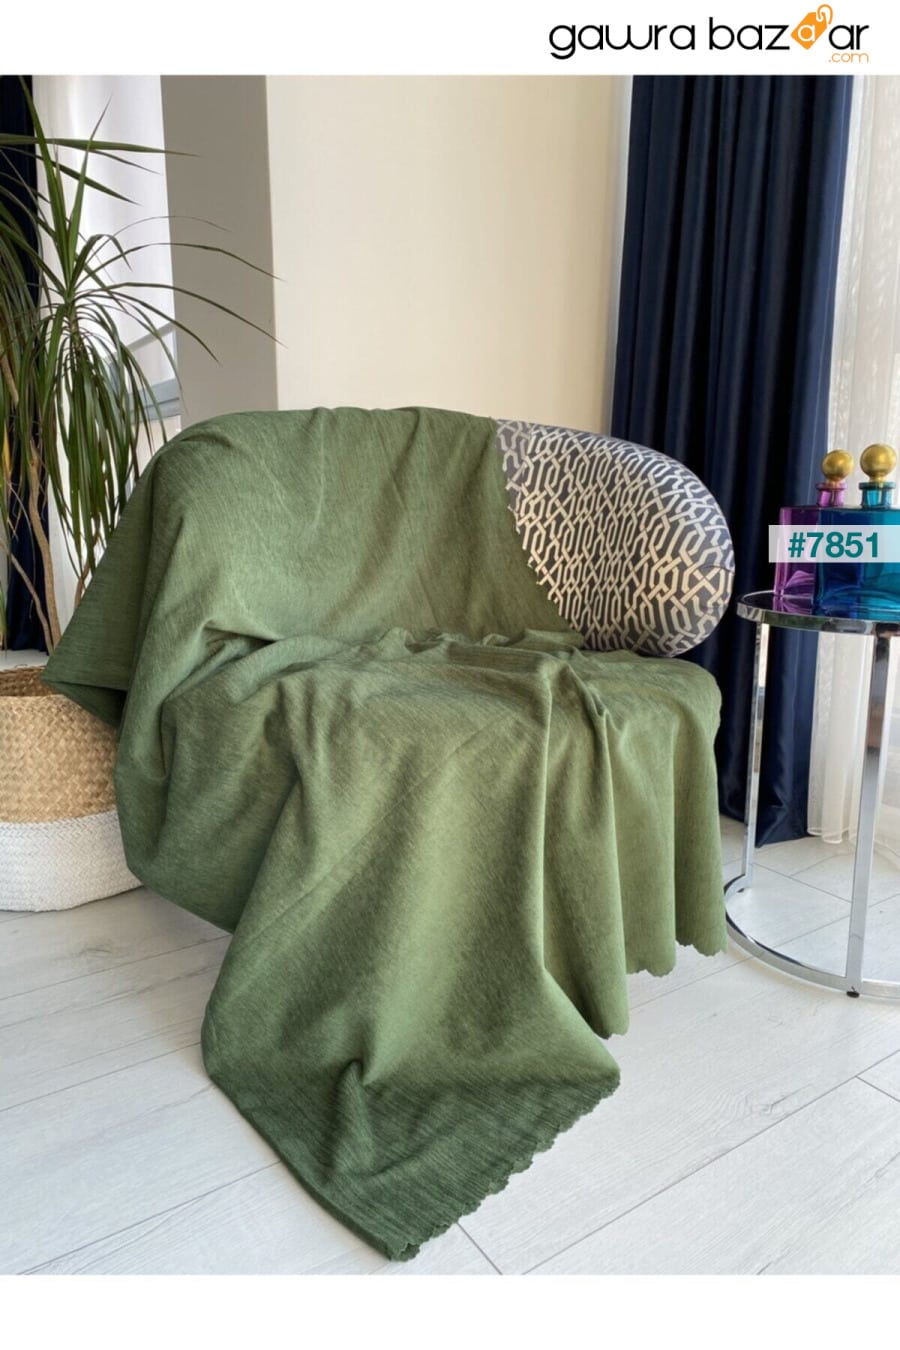 غطاء أريكة شينيل مزدوج الوجهين باللون الأخضر من Nefti غطاء أريكة سرير رمي Koçhan Manifatura 0